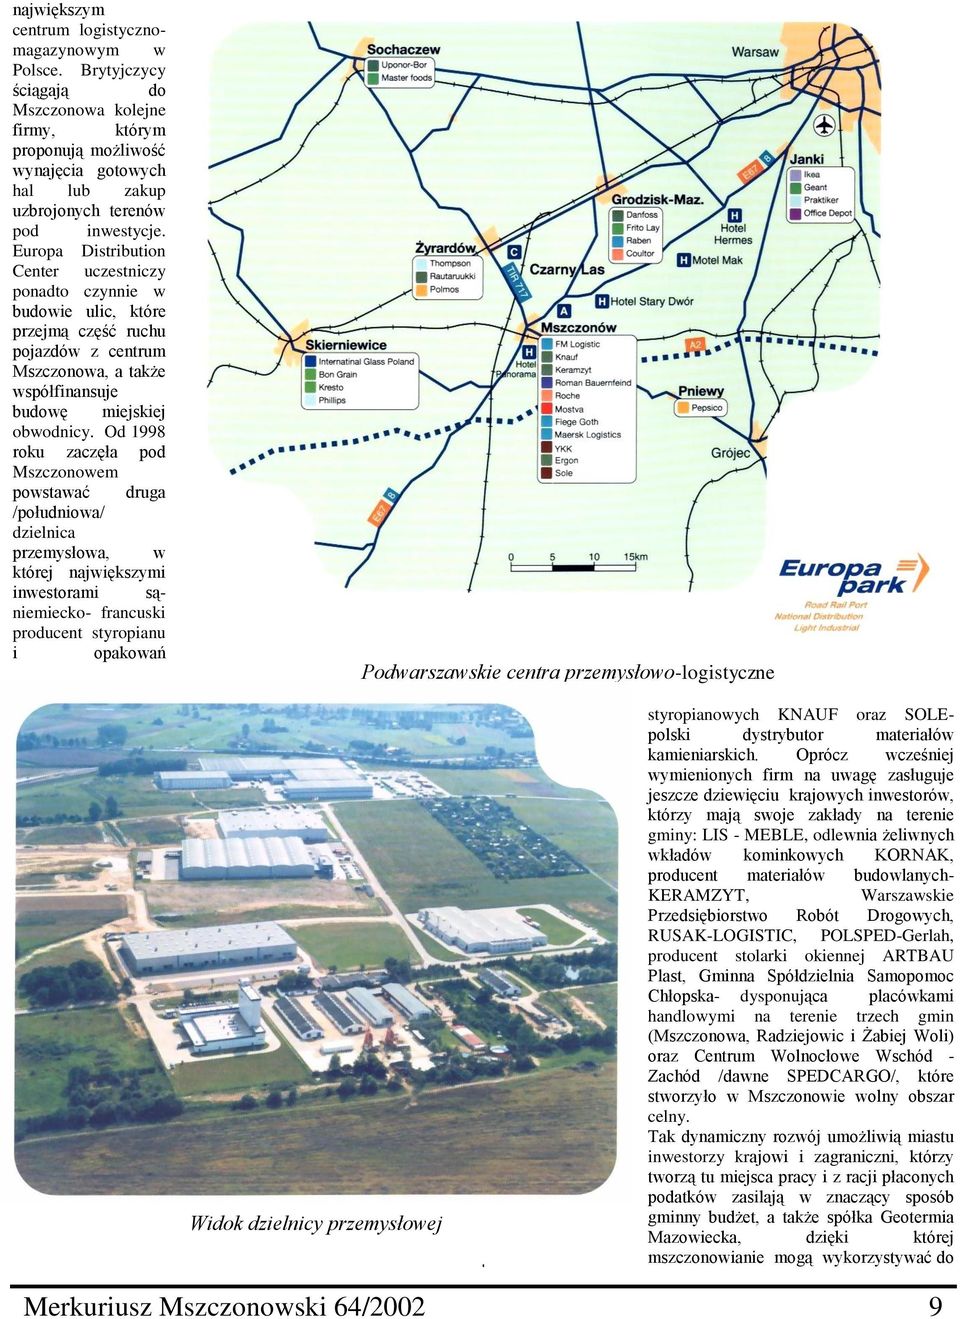 Od 1998 roku zaczęła pod Mszczonowem powstawać druga /południowa/ dzielnica przemysłowa, w której największymi inwestorami sąniemiecko- francuski producent styropianu i opakowań Podwarszawskie centra